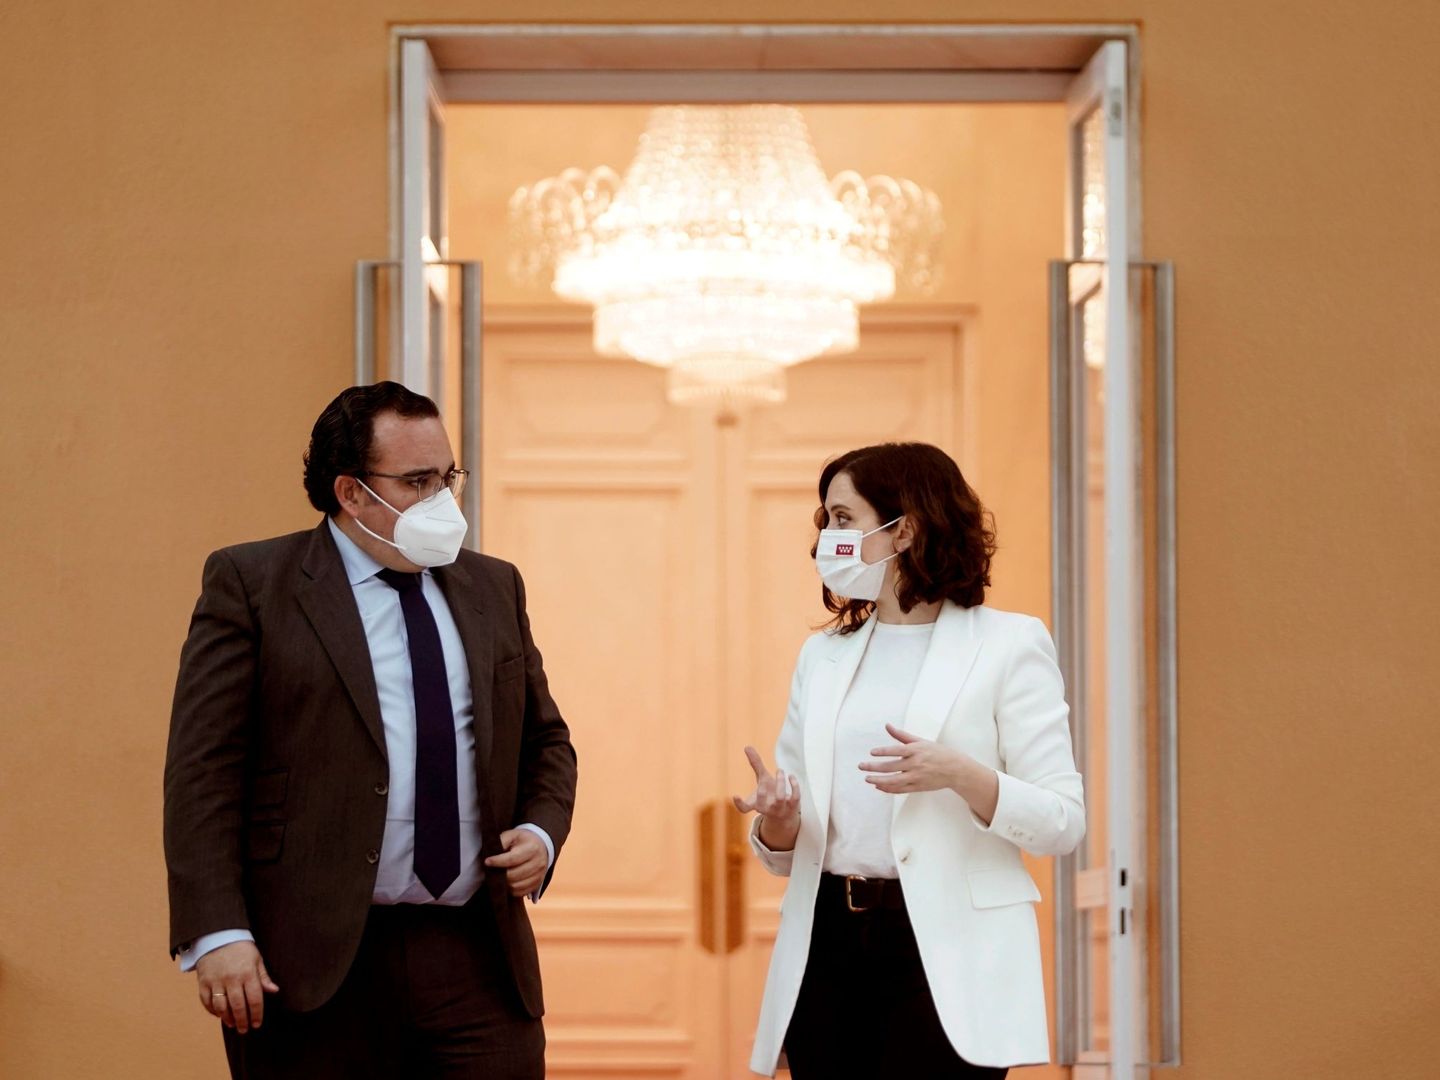 La presidenta de la Comunidad de Madrid, Isabel Díaz Ayuso y el alcalde de Boadilla del Monte, Javier Ubeda, tras una reunión. (EFE)